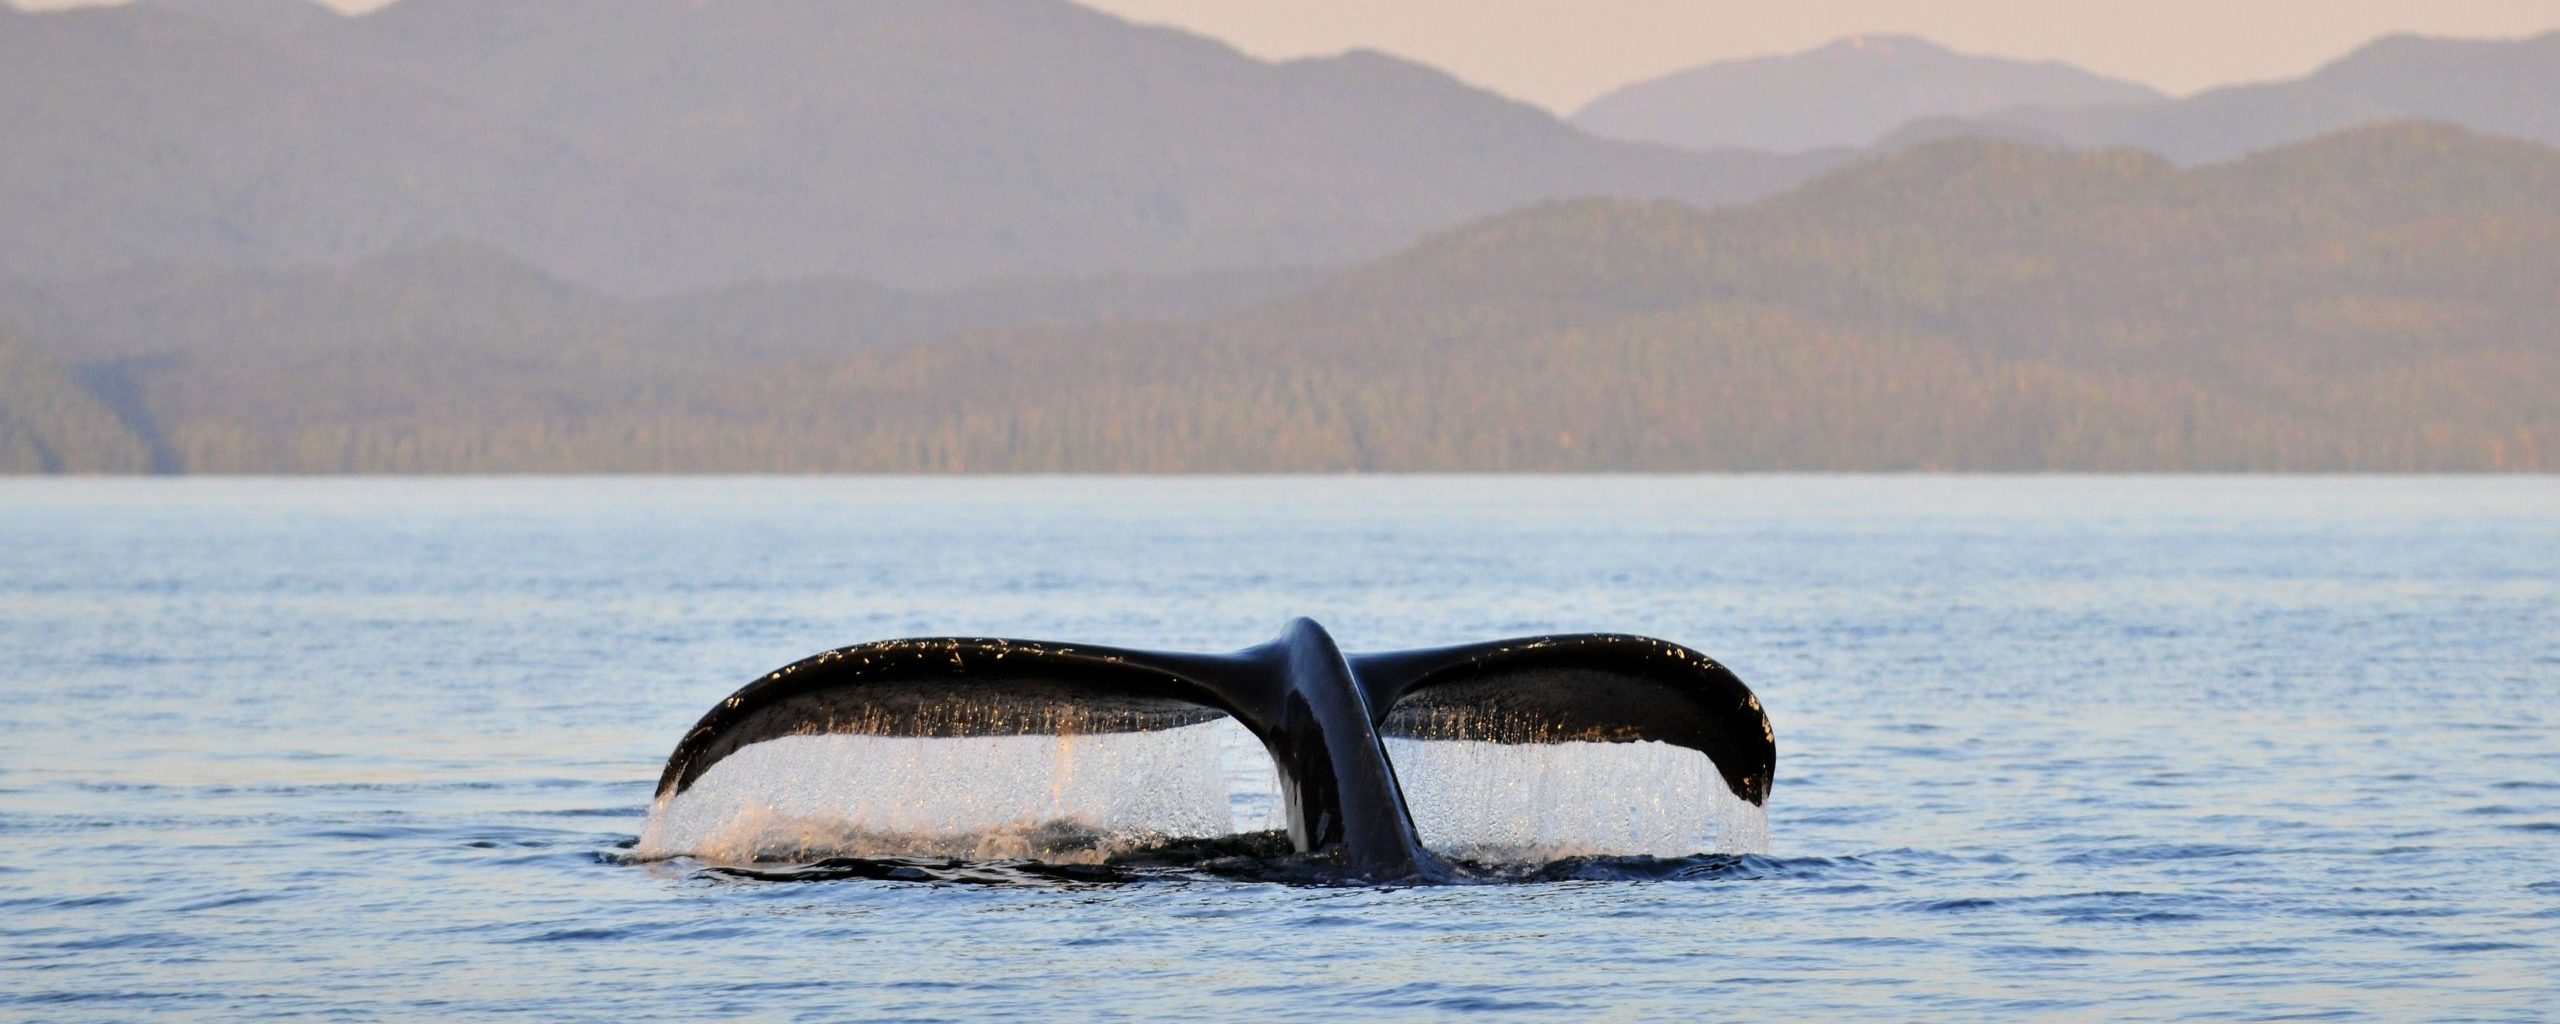 La queue d’une baleine à bosse (Megaptera novaeangliae) dans le soleil couchant au sud-ouest de l’ile Gil dans la zone marine du Grand Ours, en Colombie-Britannique